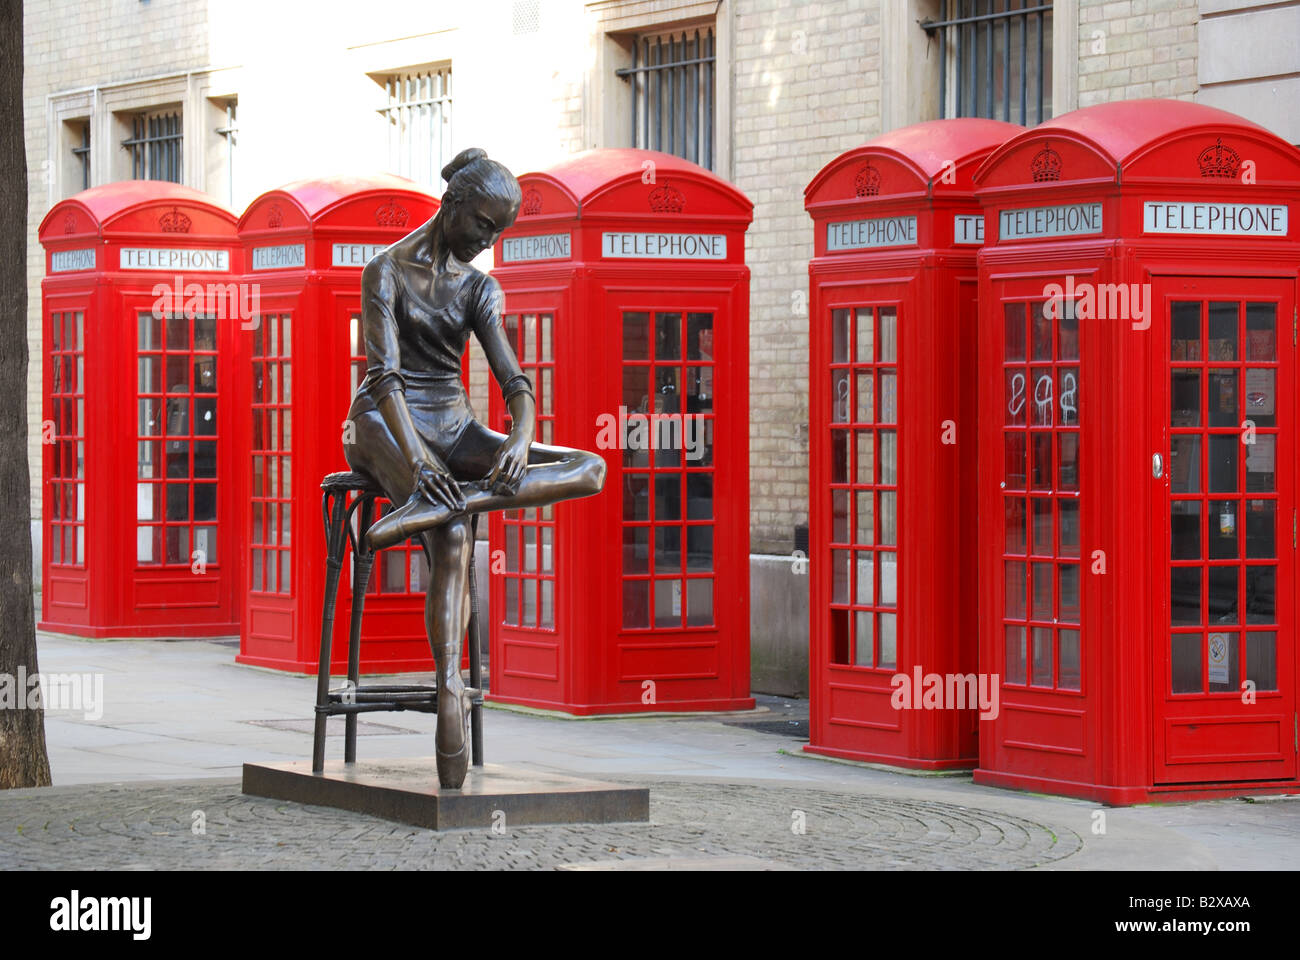 Giovane ballerina scultura di Plazzotta, ampia corte, Covent Garden di Londra, Inghilterra, Regno Unito Foto Stock